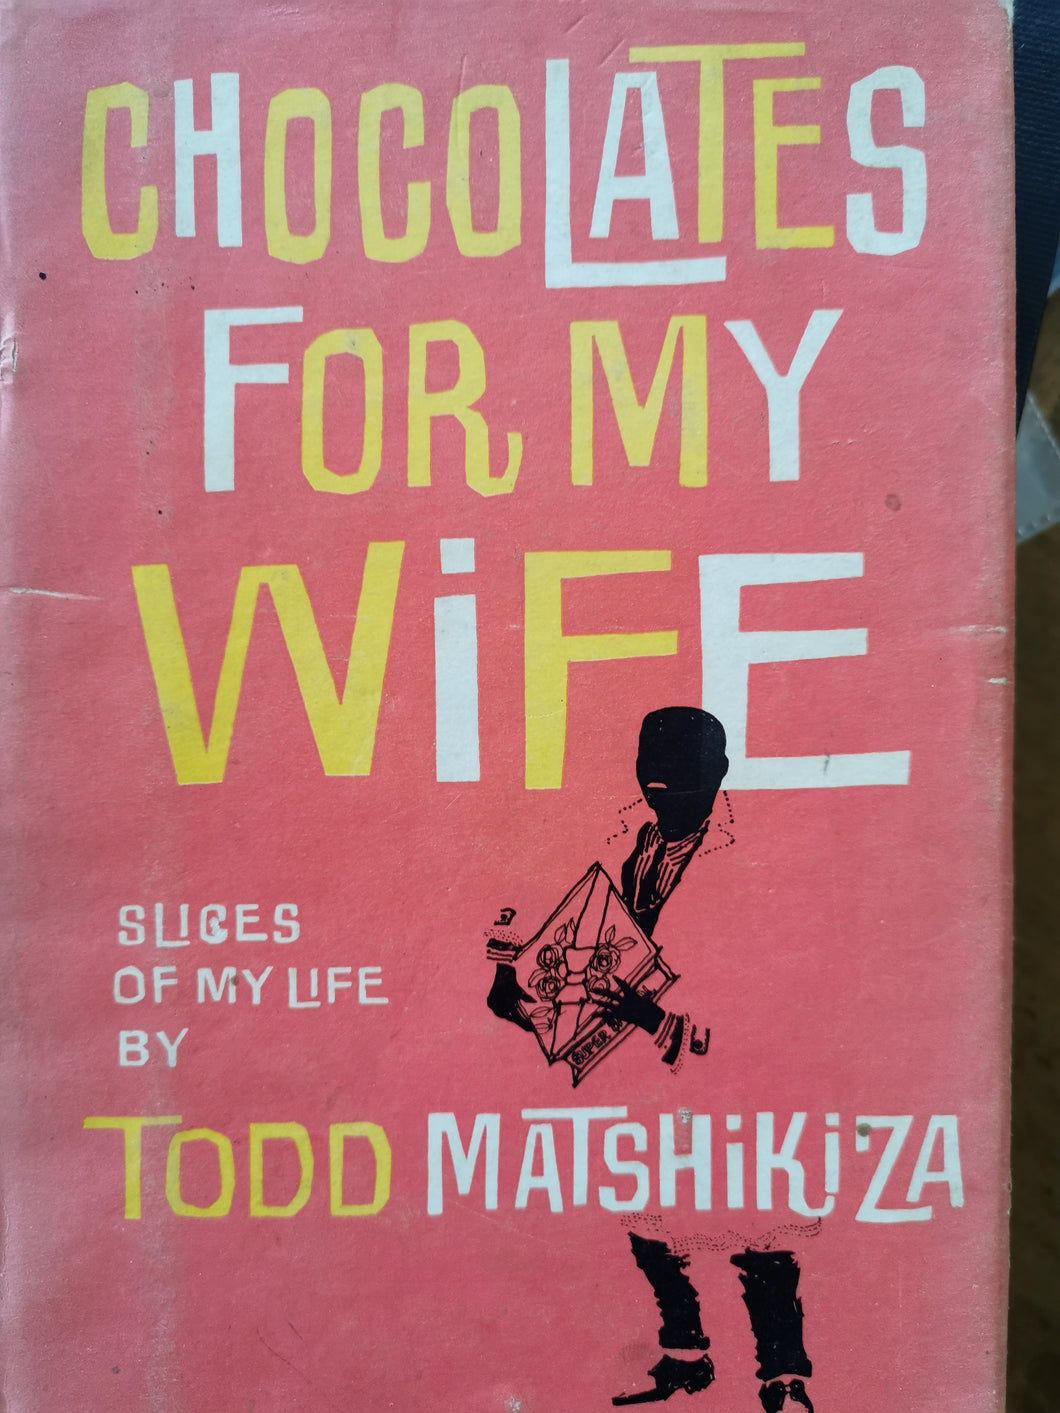 Todd Matshikiza - Chocolates for My Wife